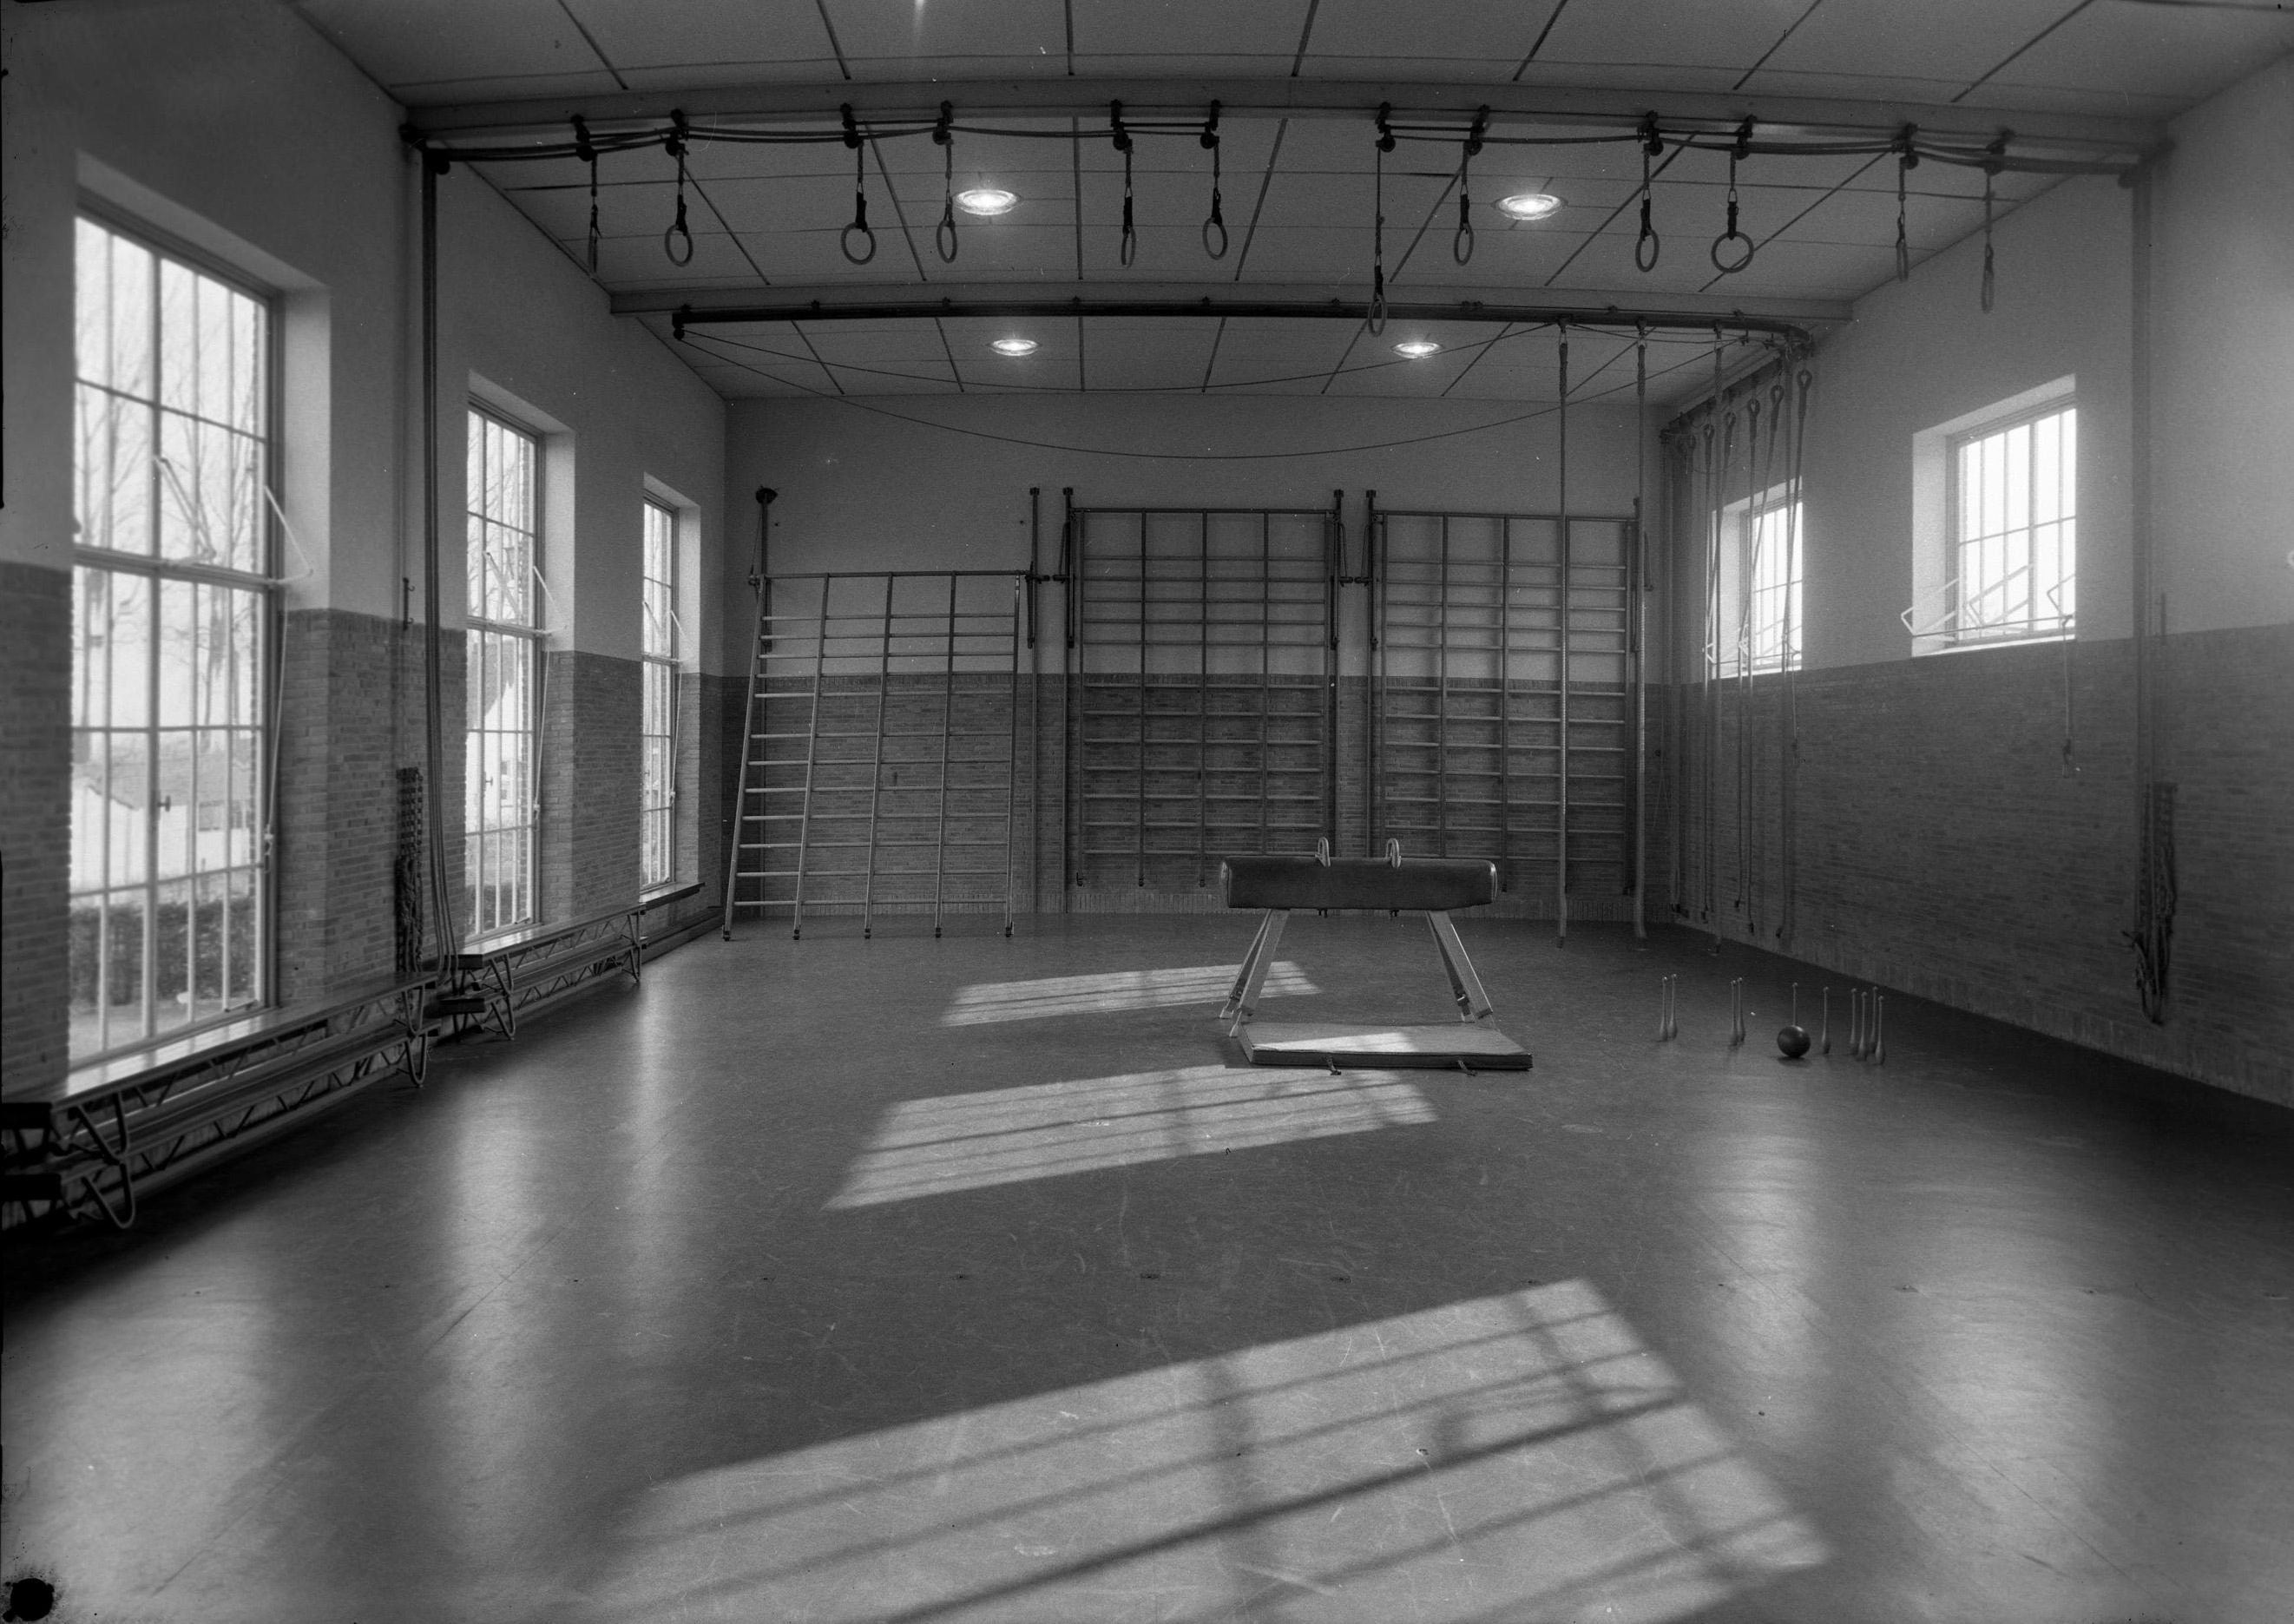 Gymlokaal van de rk meisjesschool, Liempde 1960 (foto: Fotopersbureau Het Zuiden, collectie BHIC 1902-001324)